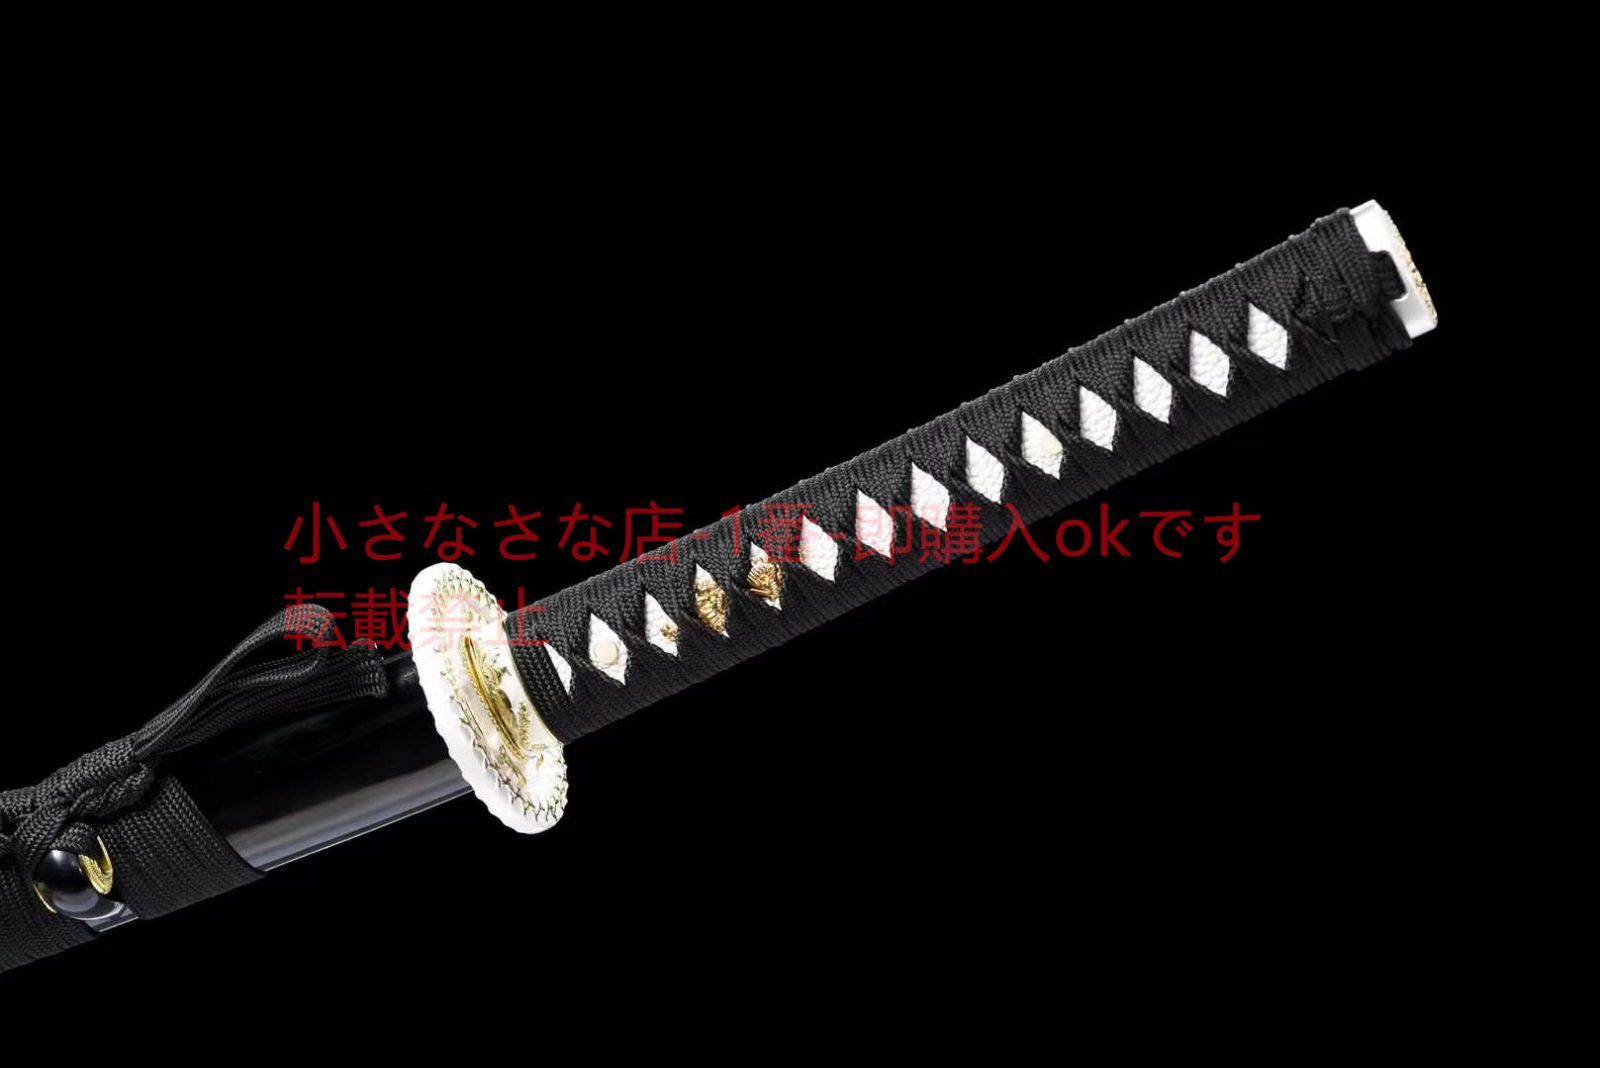 焼藍武士刀『魔淵の刃』 武具 刀装具 日本刀 模造刀 居合刀 - メルカリ